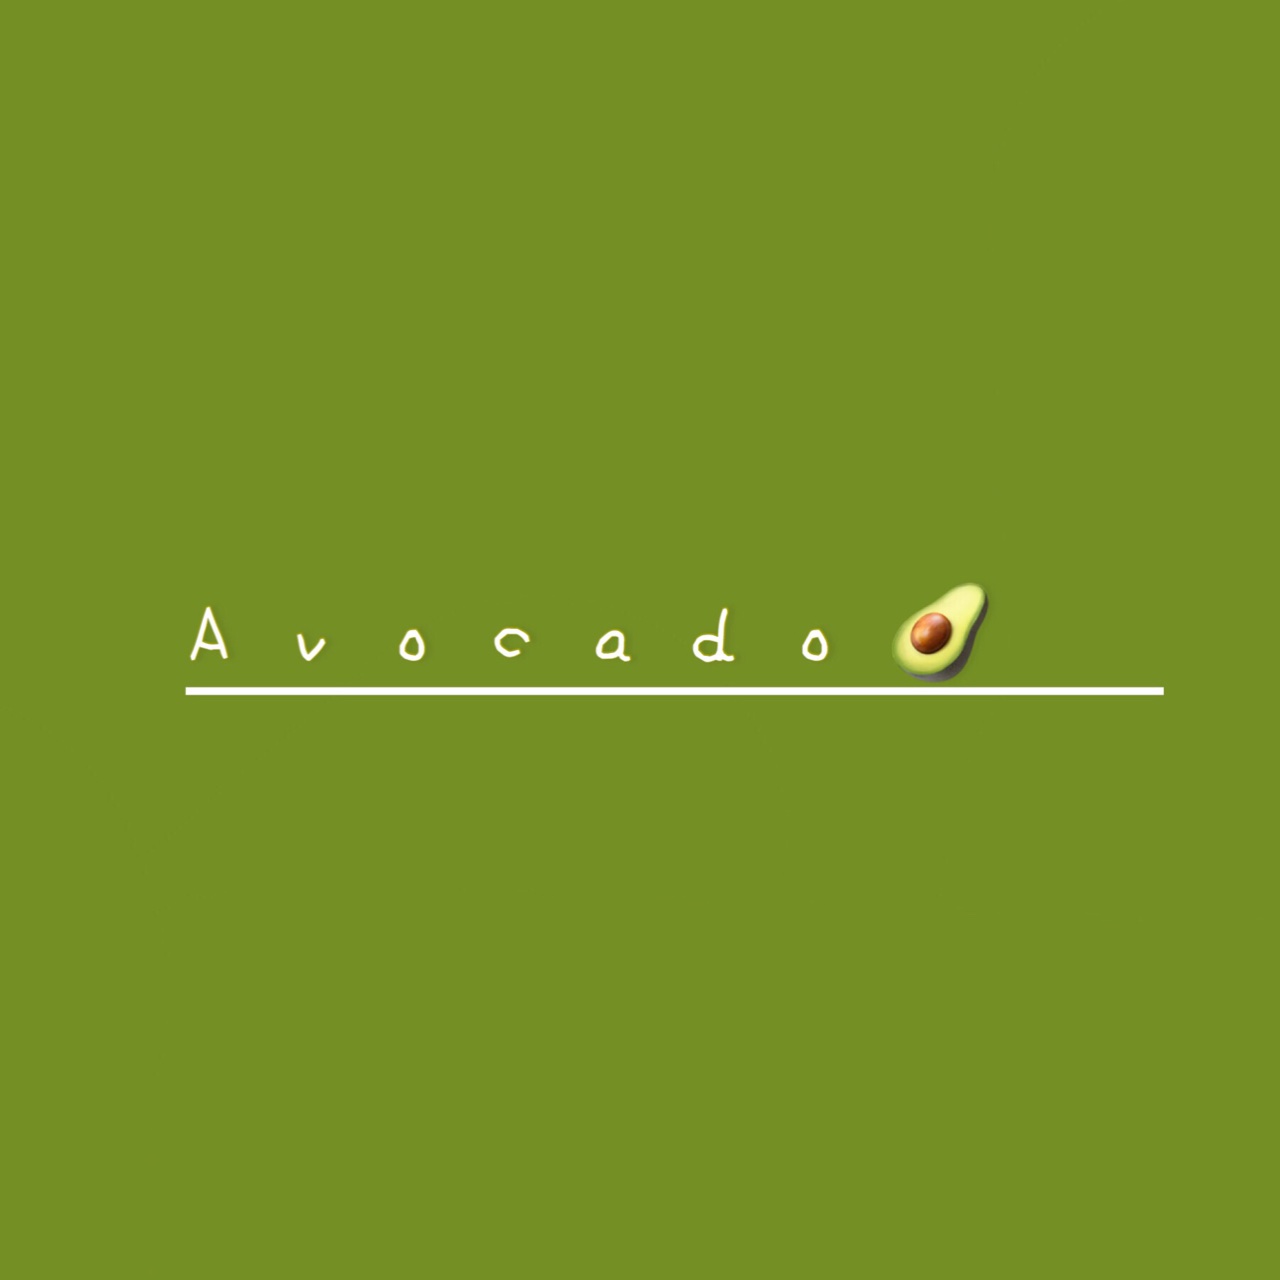 Avocadooo